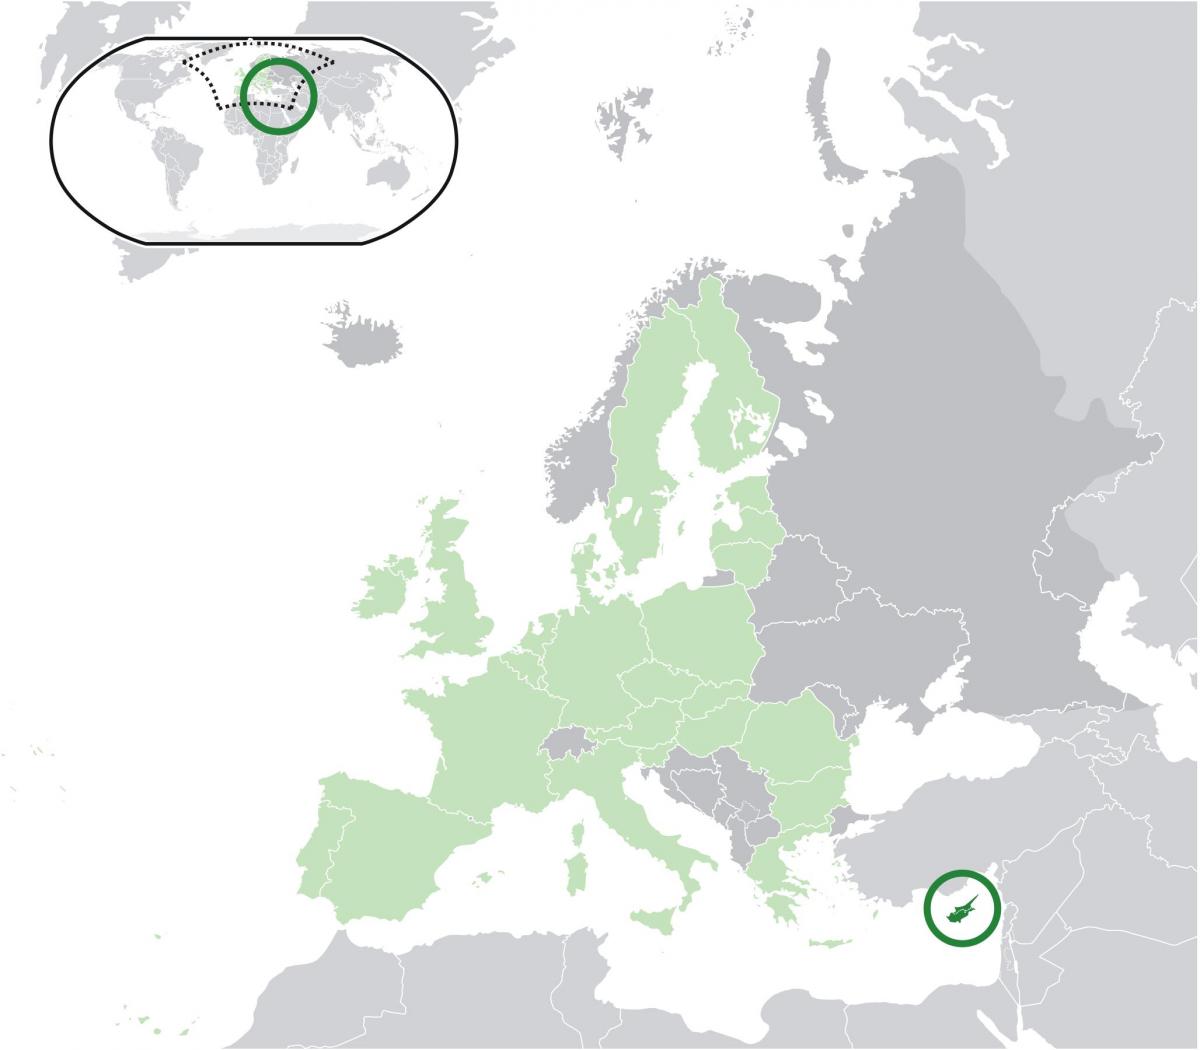 χάρτης της ευρώπης με την Κύπρο